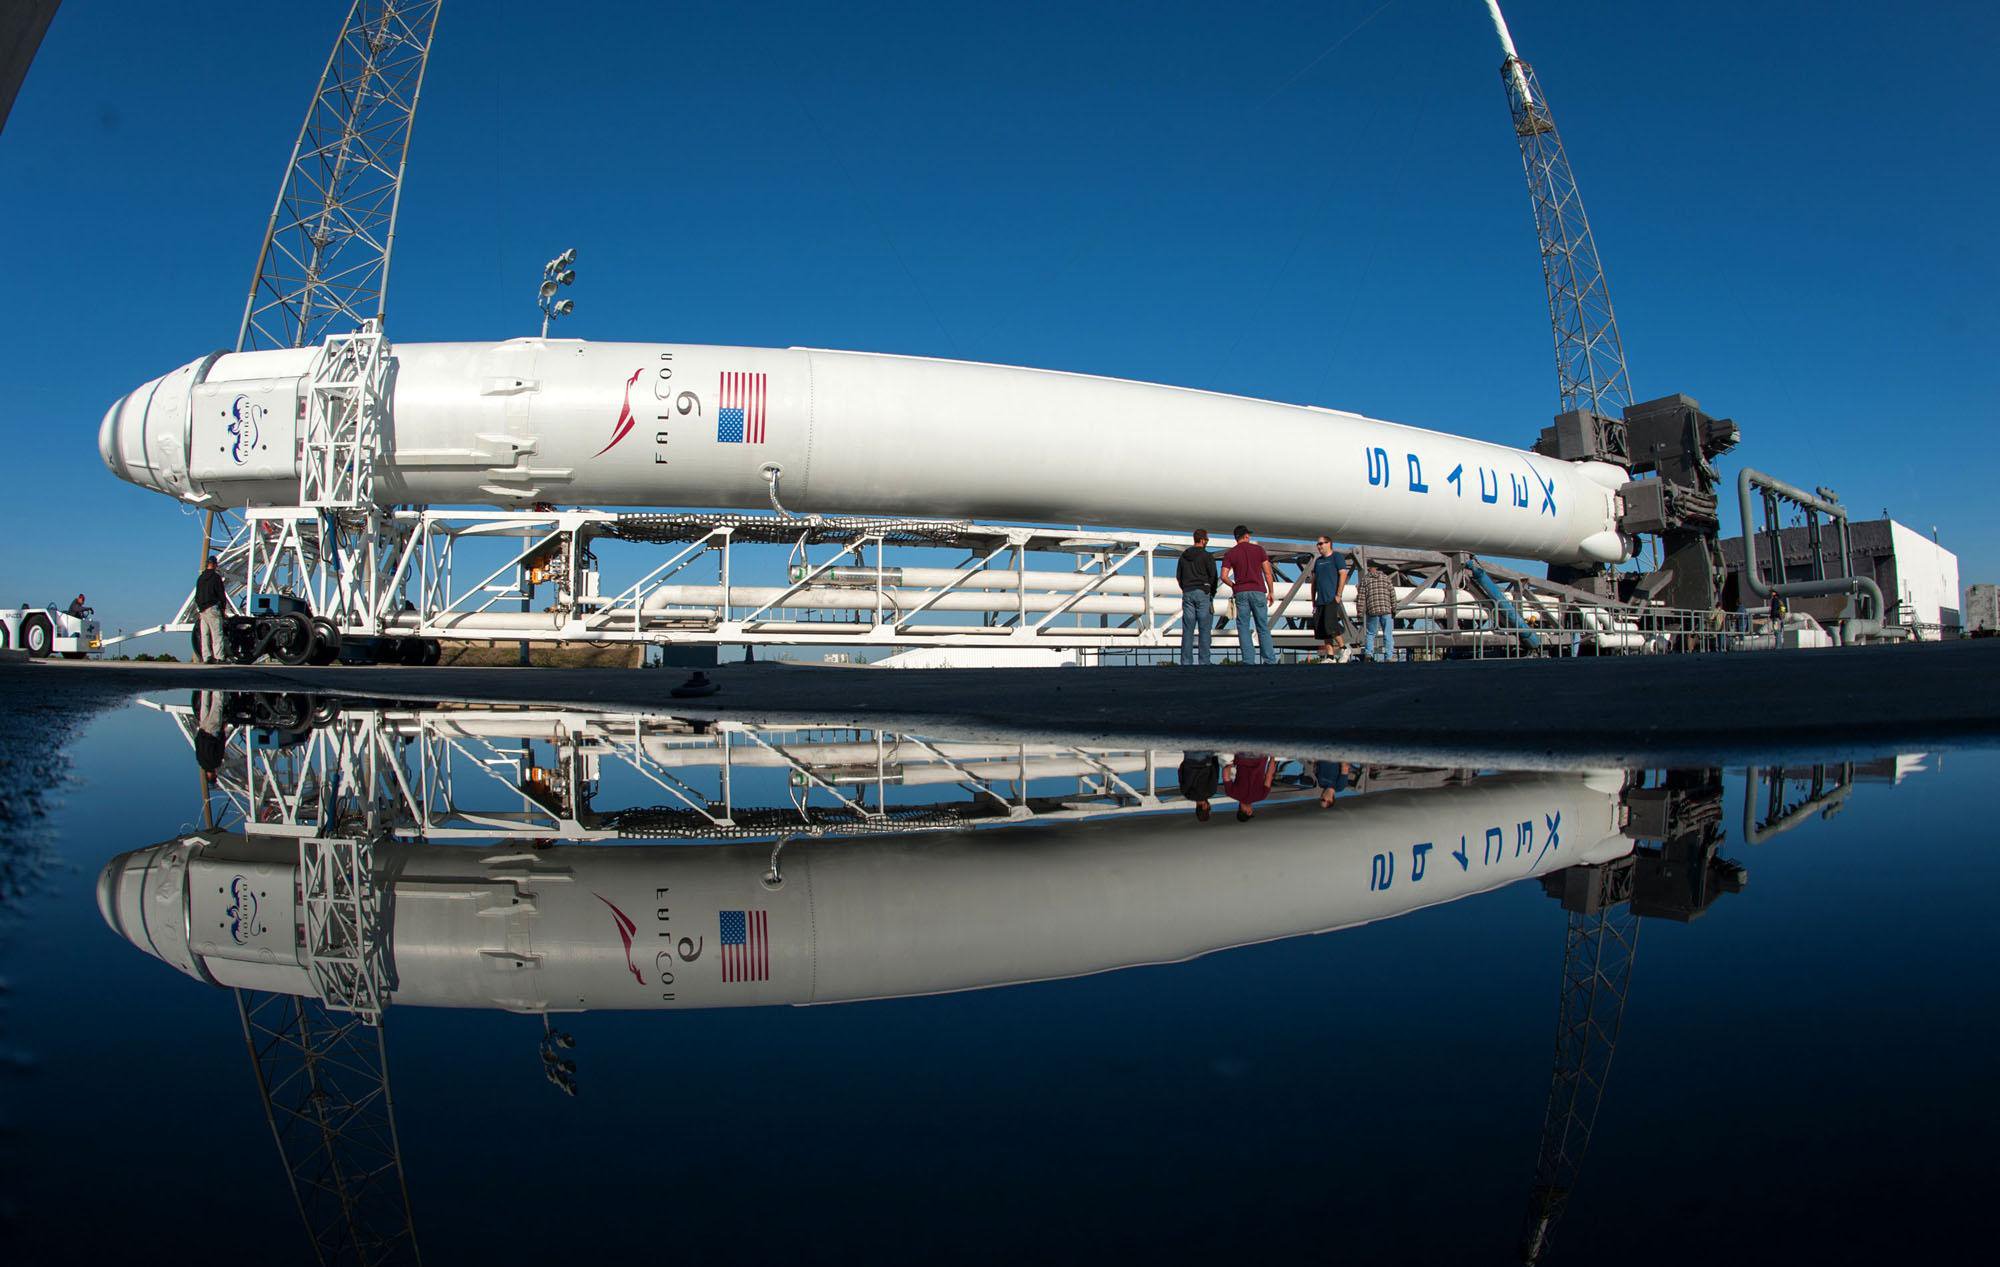 Kazajstán rechazó los servicios de roskosmos y eligió SpaceX. ¿Por qué?